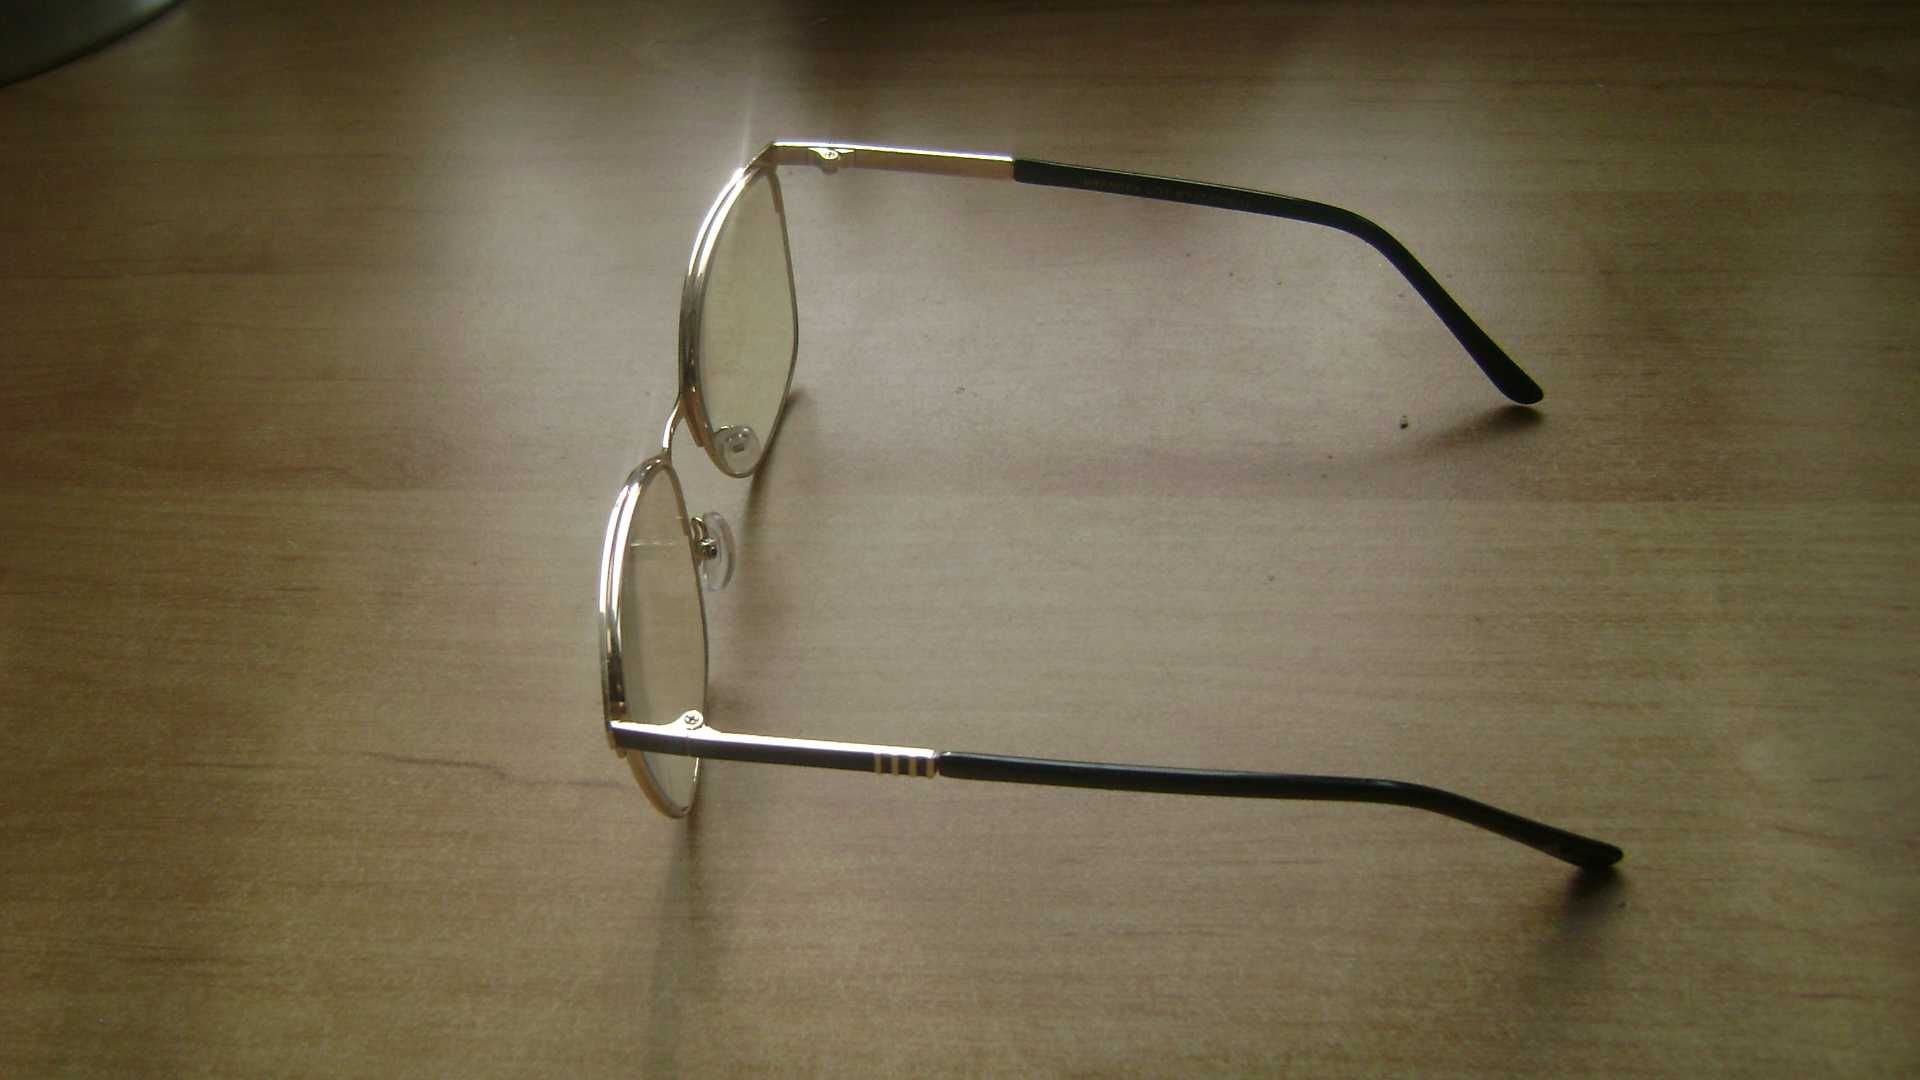 Starocie z PRL - Okulary korekcyjne damskie +1 dioptria rozstaw 14cm